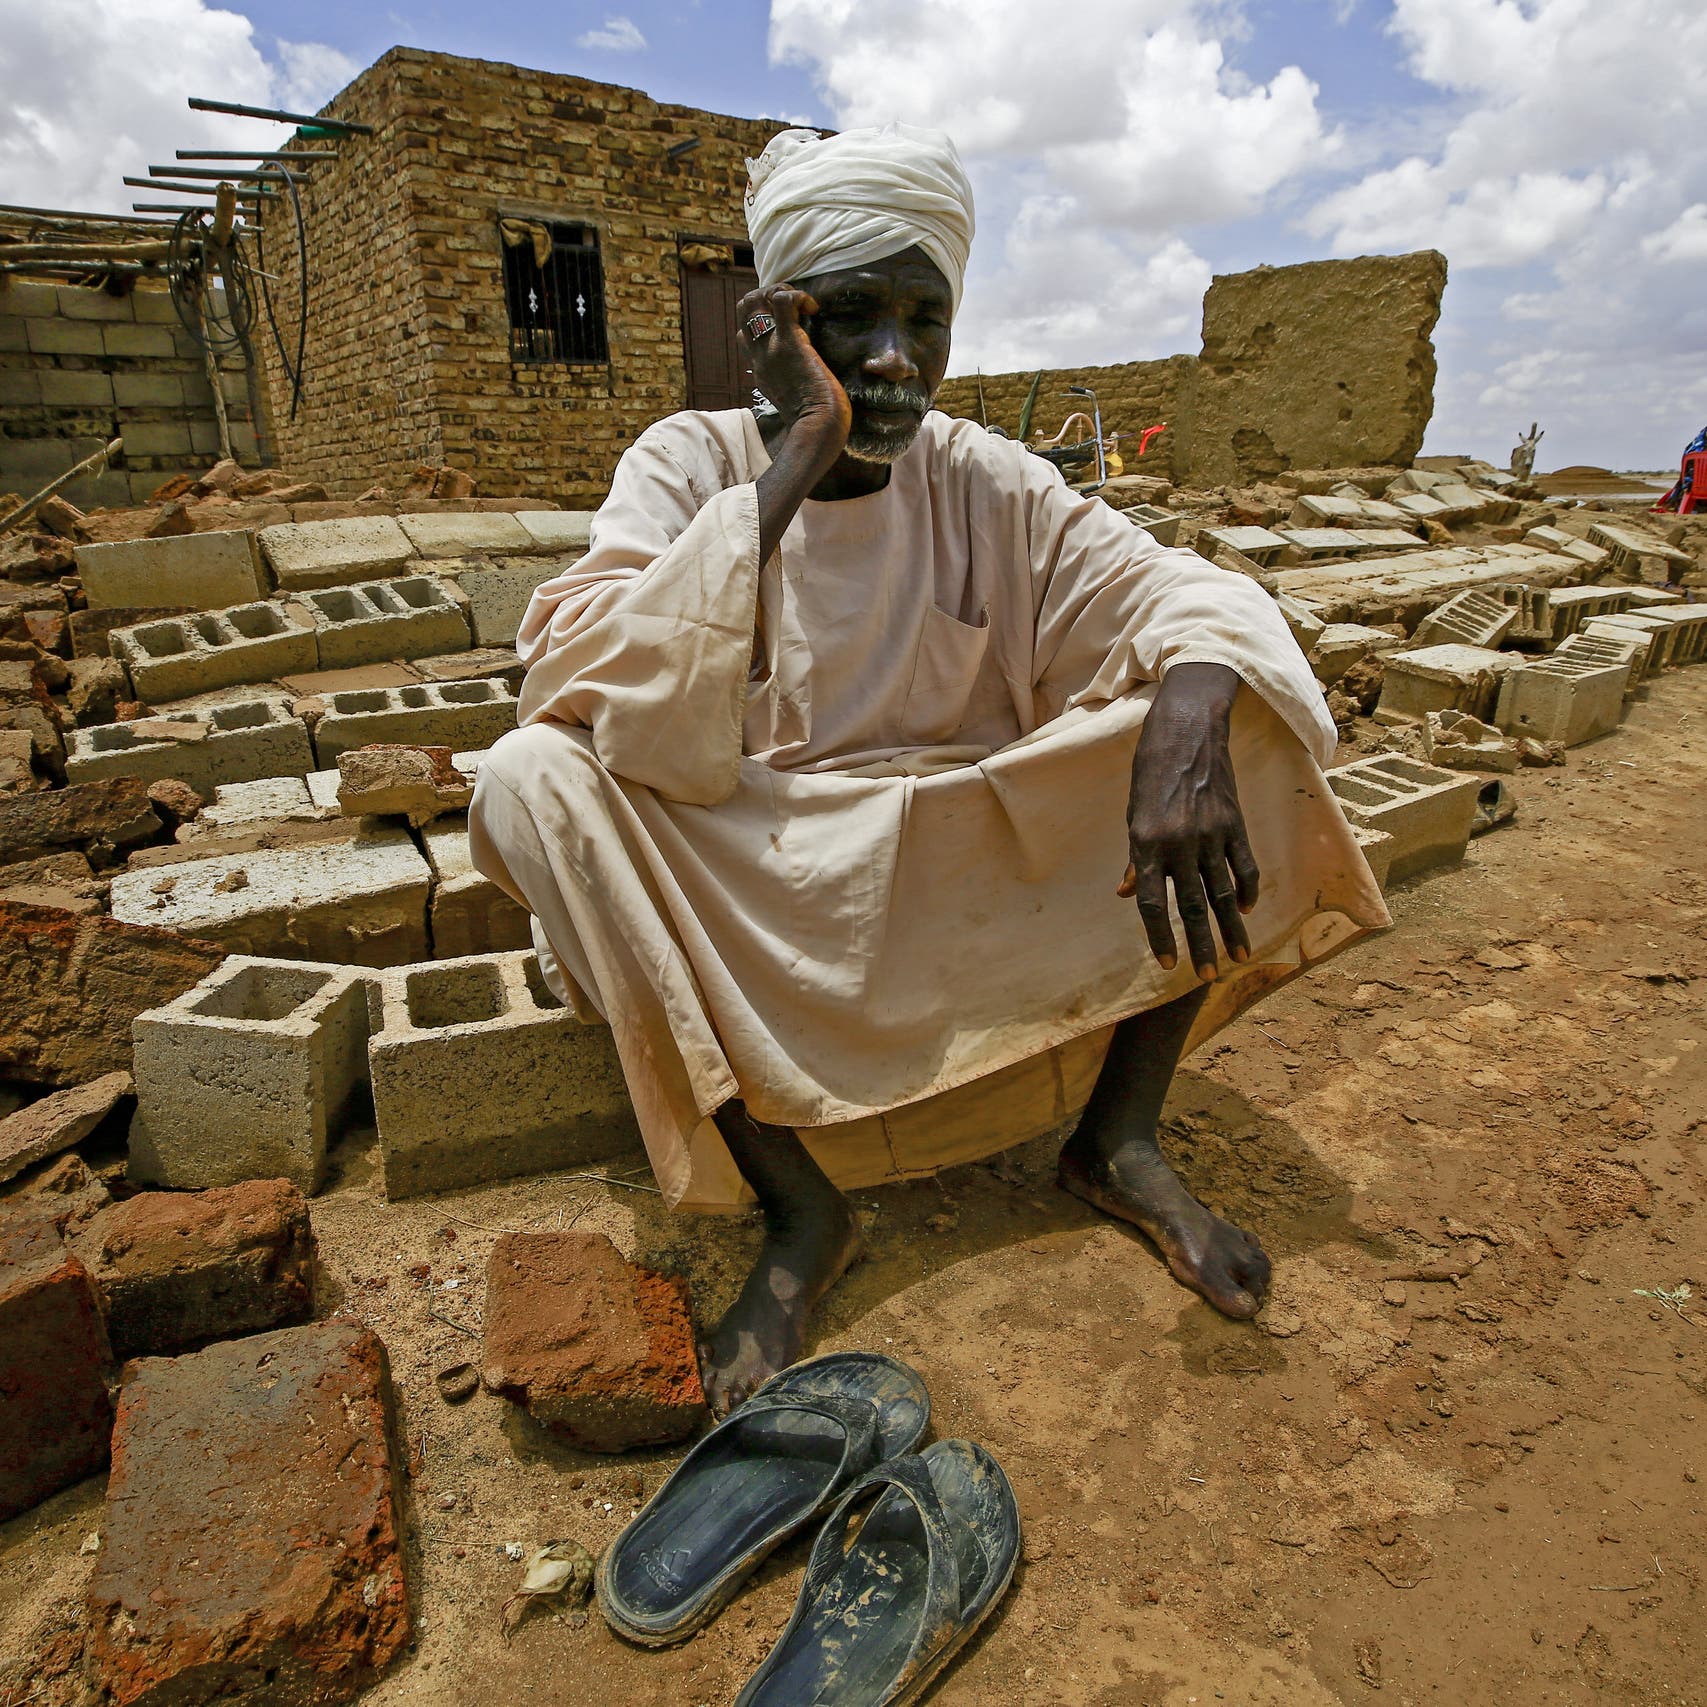 30 قتيلاً جراء السيول في السودان.. وتدمير آلاف المساكن